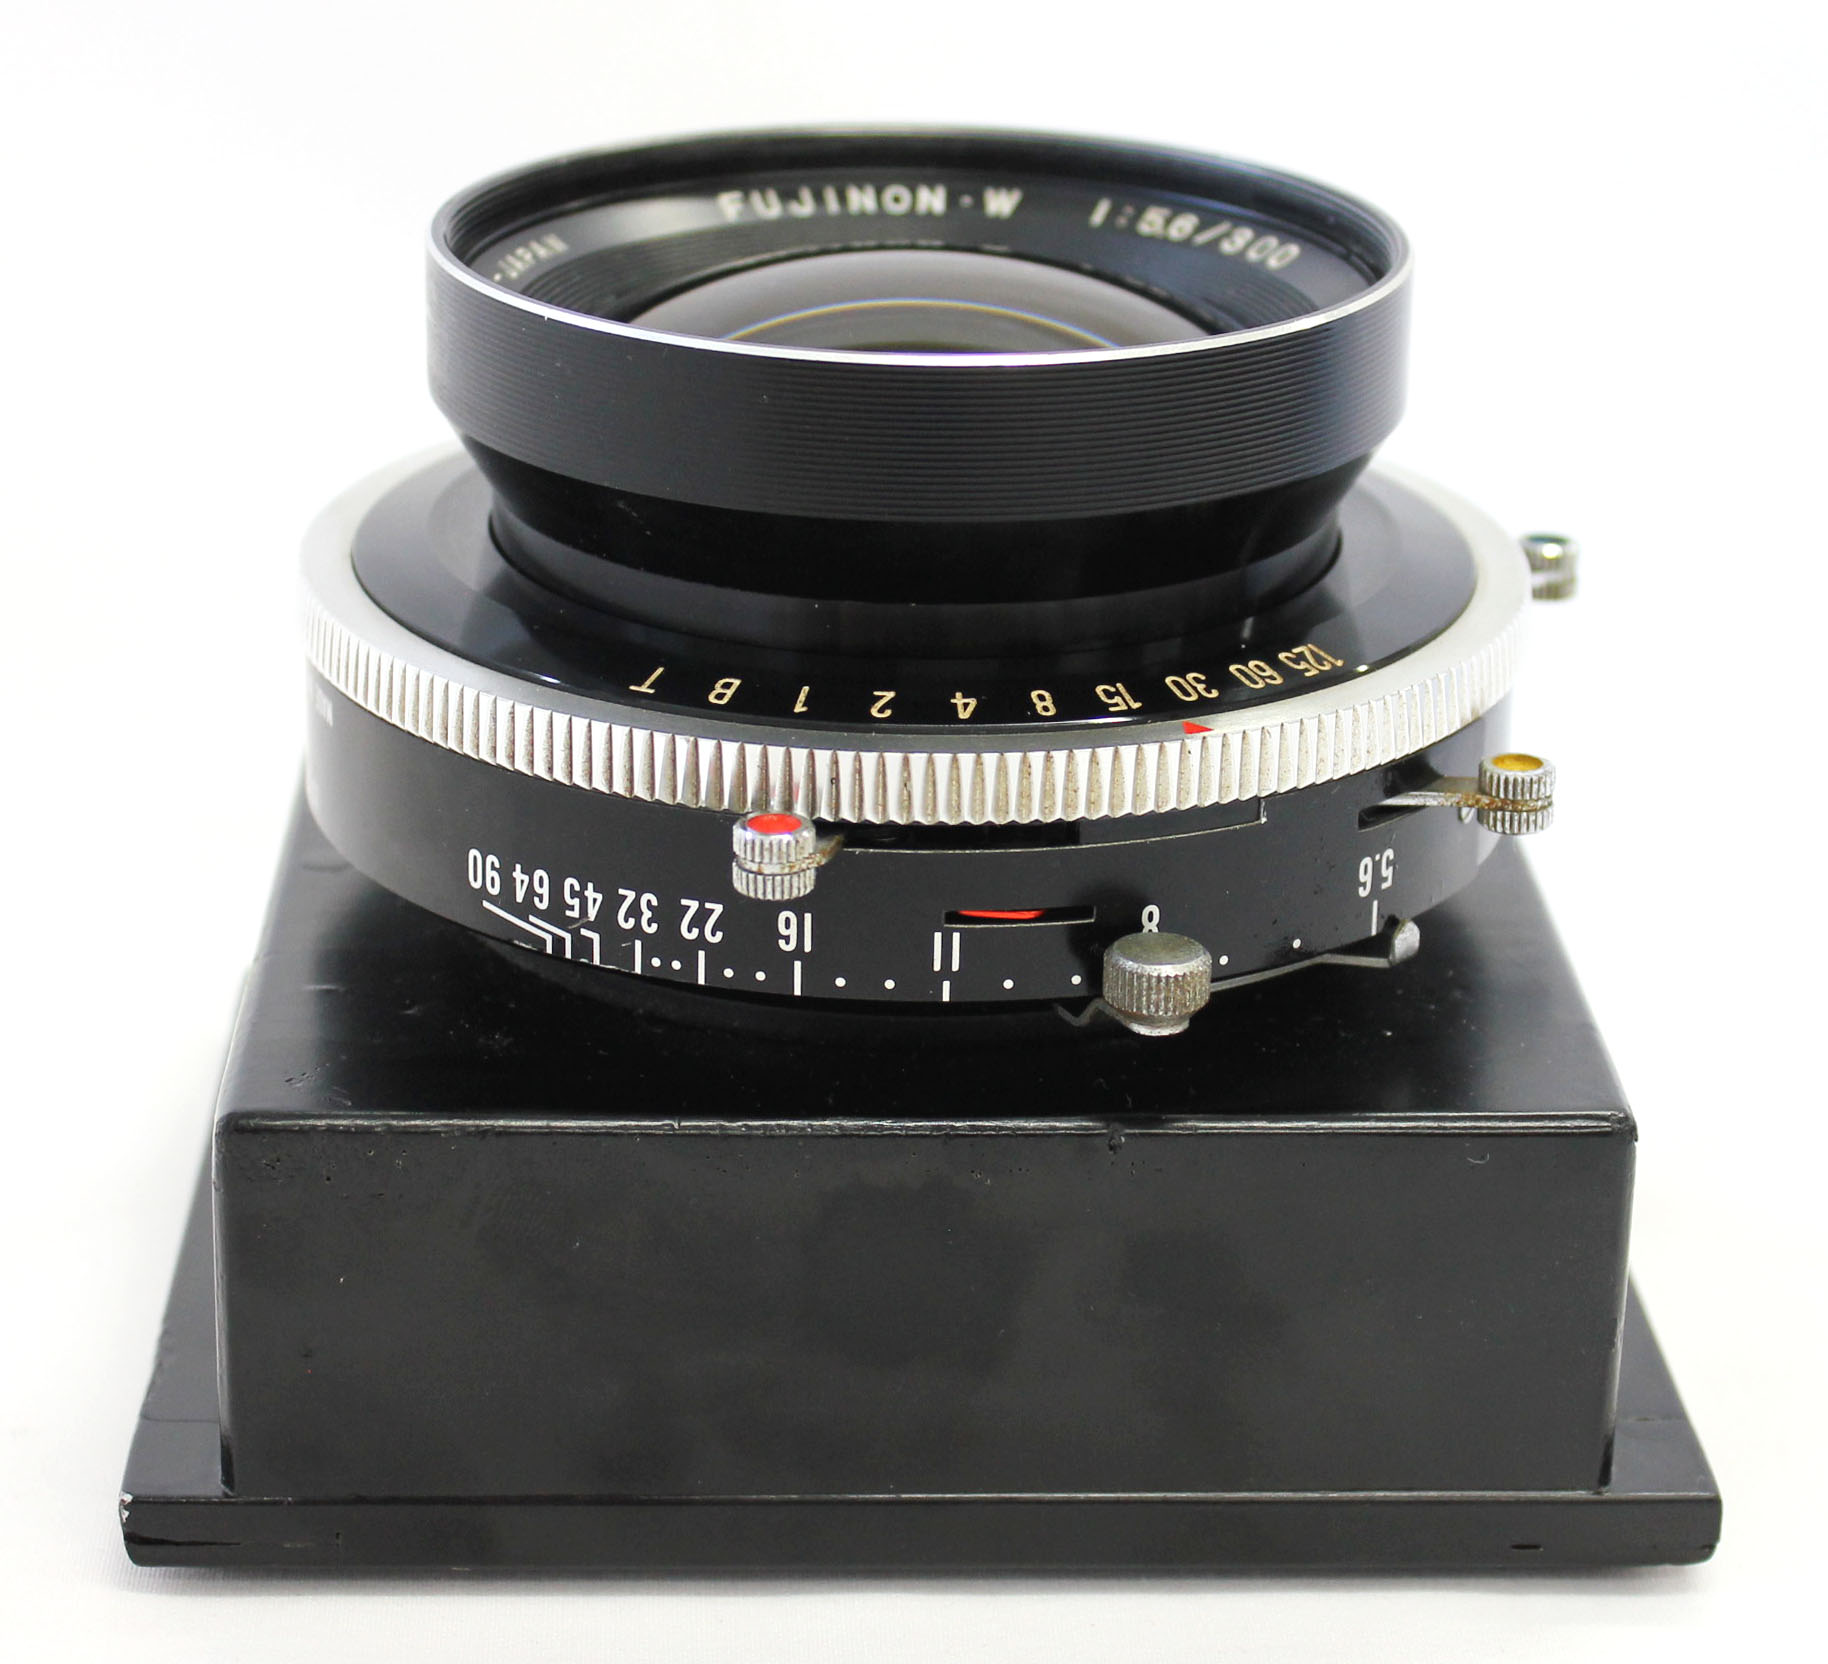 Fuji Fujinon W 300mm F/5.6 8x10 4x5 Large Format Lens Copal No.3 Shutter from Japan Photo 4